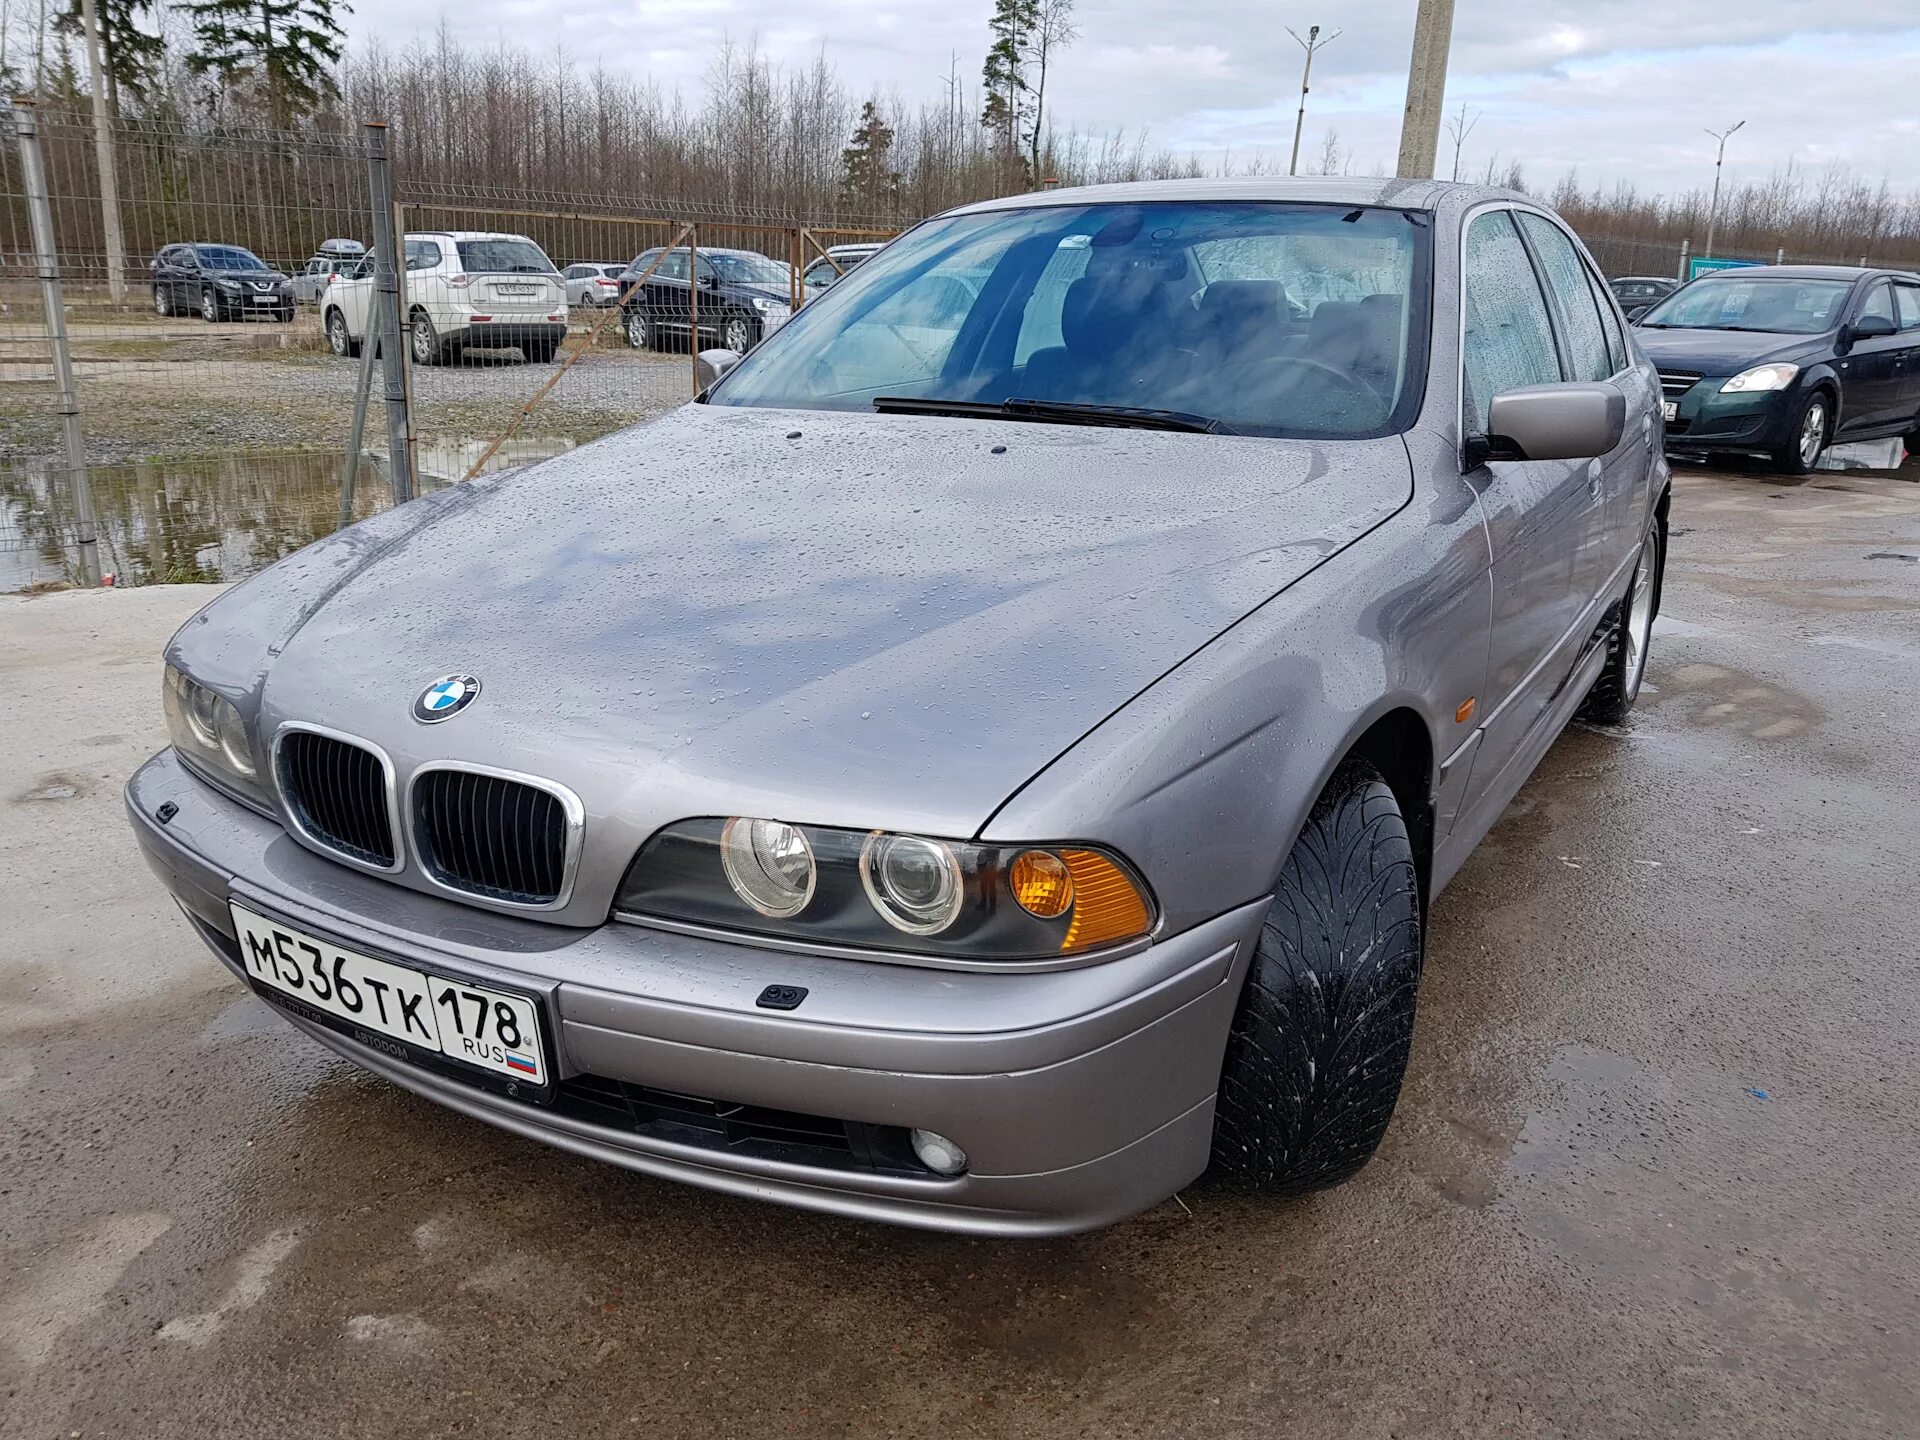 BMW 5 2001. BMW 5 Series 2001. БМВ 5 2001 года. БМВ 5 2001г. Купить бмв 2001